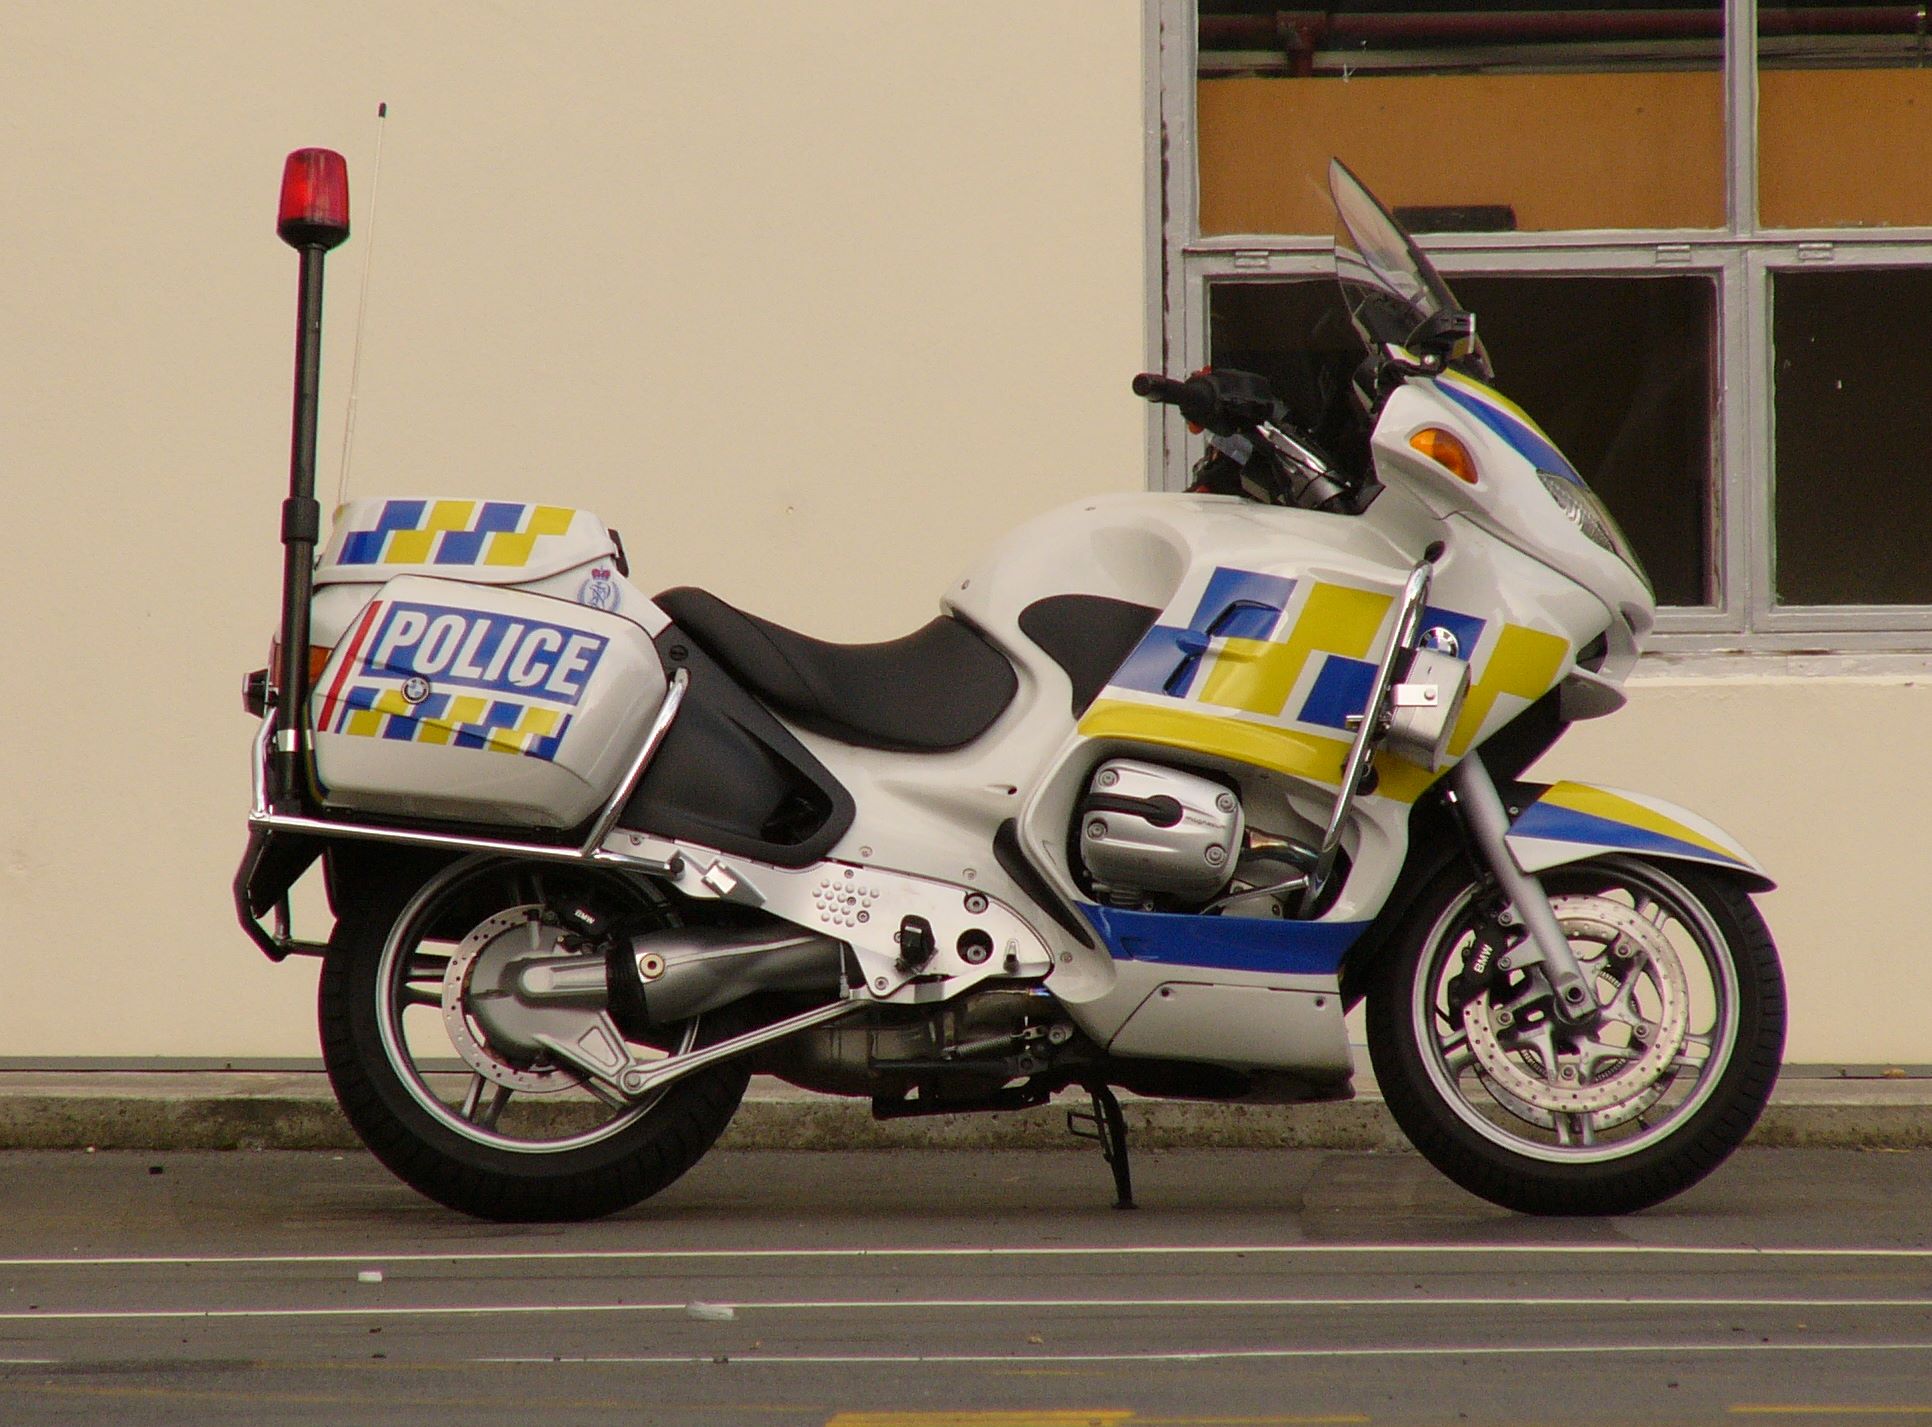 Скачать обои Полицейский Мотоцикл на телефон бесплатно